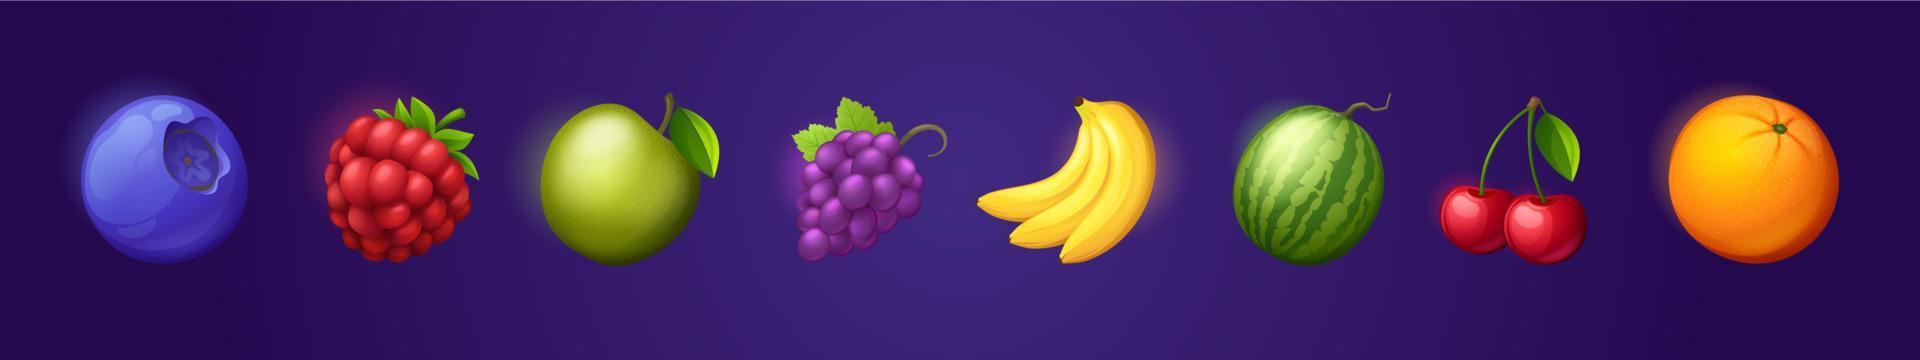 Obst- und Beerensymbole, Orange, Apfel, Banane vektor